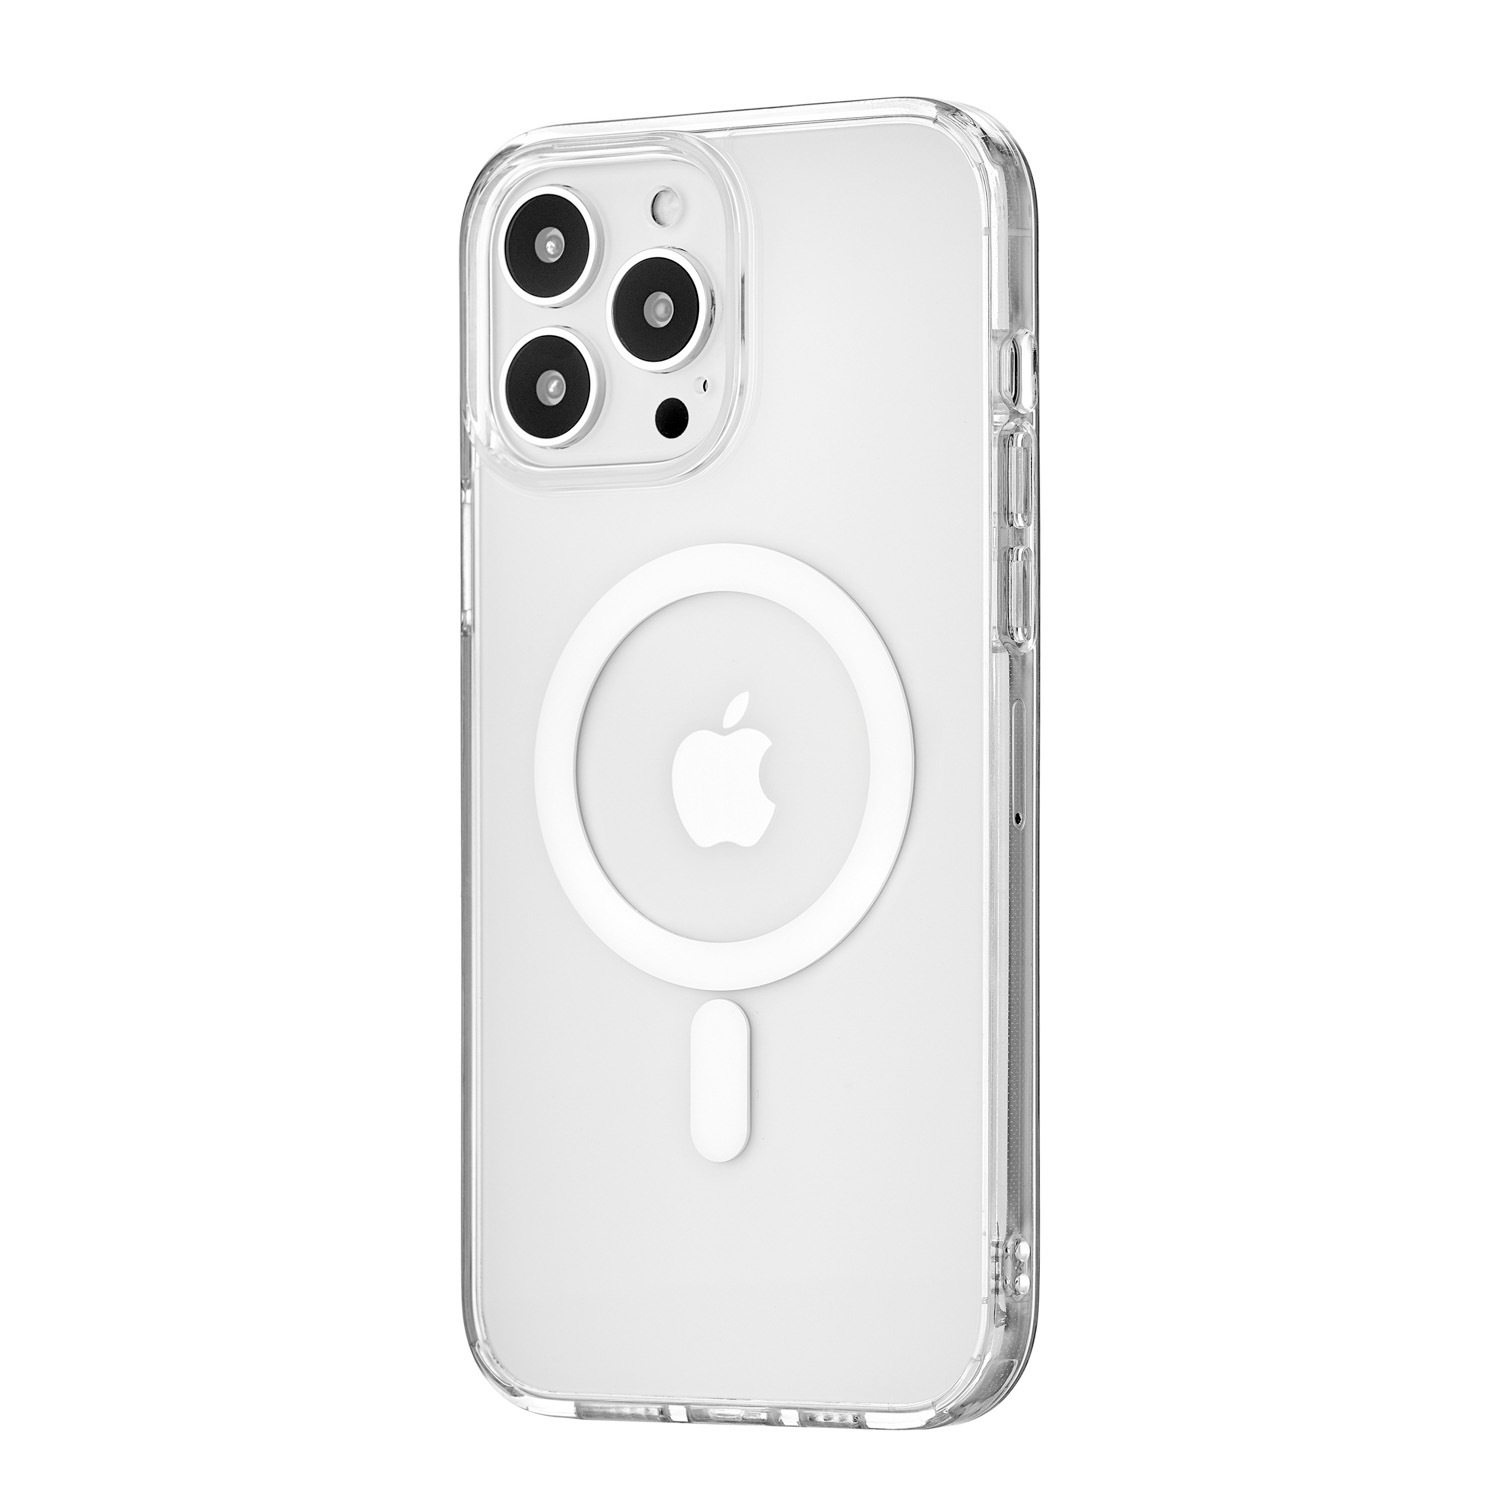 Чехол uBear Real Mag Case для iPhone 13 Pro Max, PC+TPU, MagSafe Compatible, прозрачный, купить в Москве, цены в интернет-магазинах на Мегамаркет